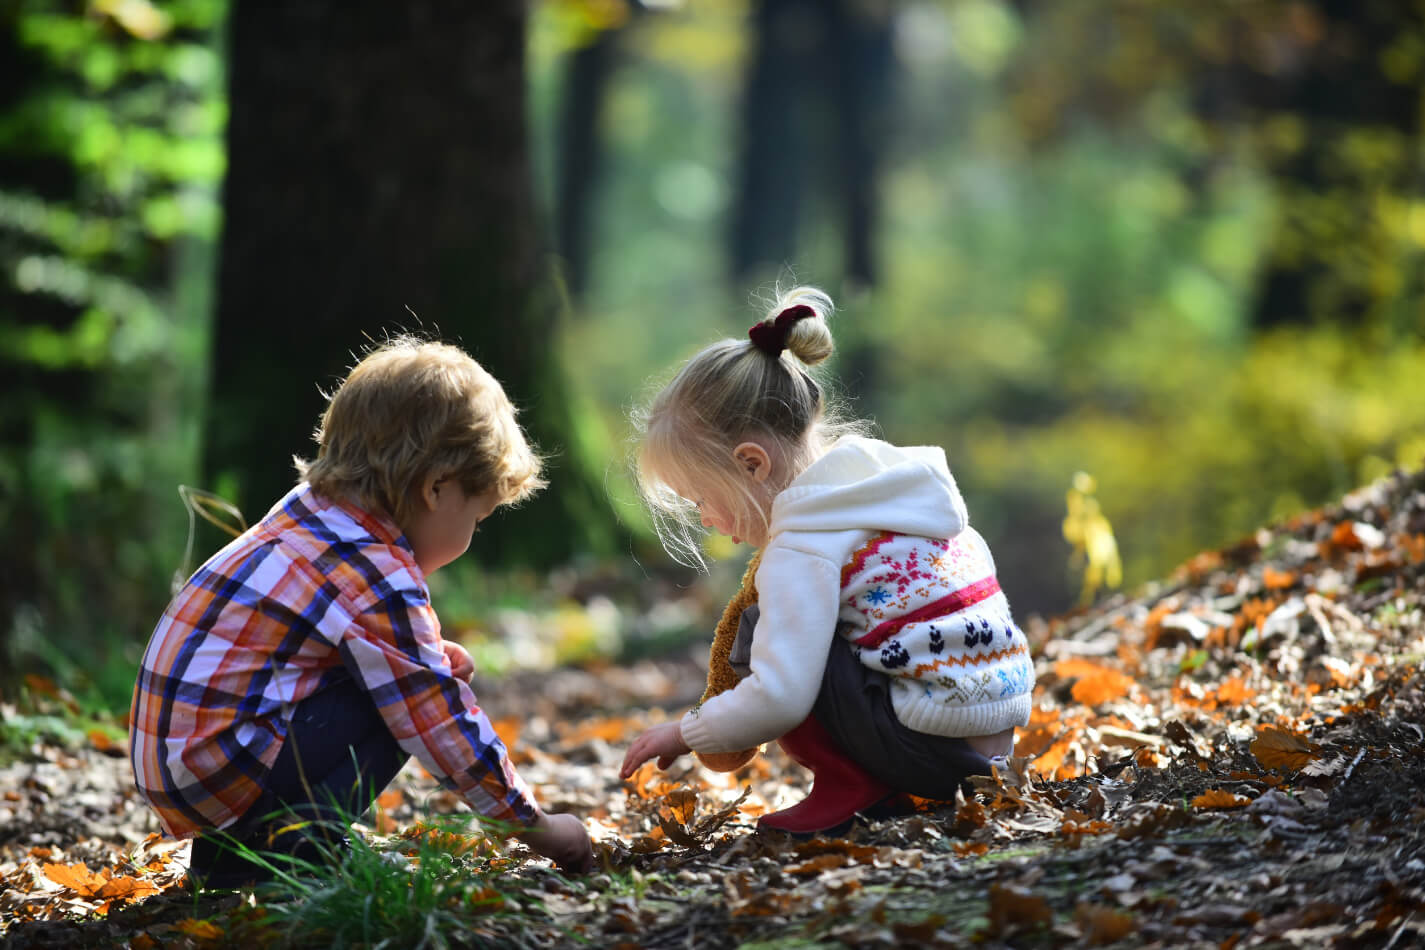 Children playing in autumn